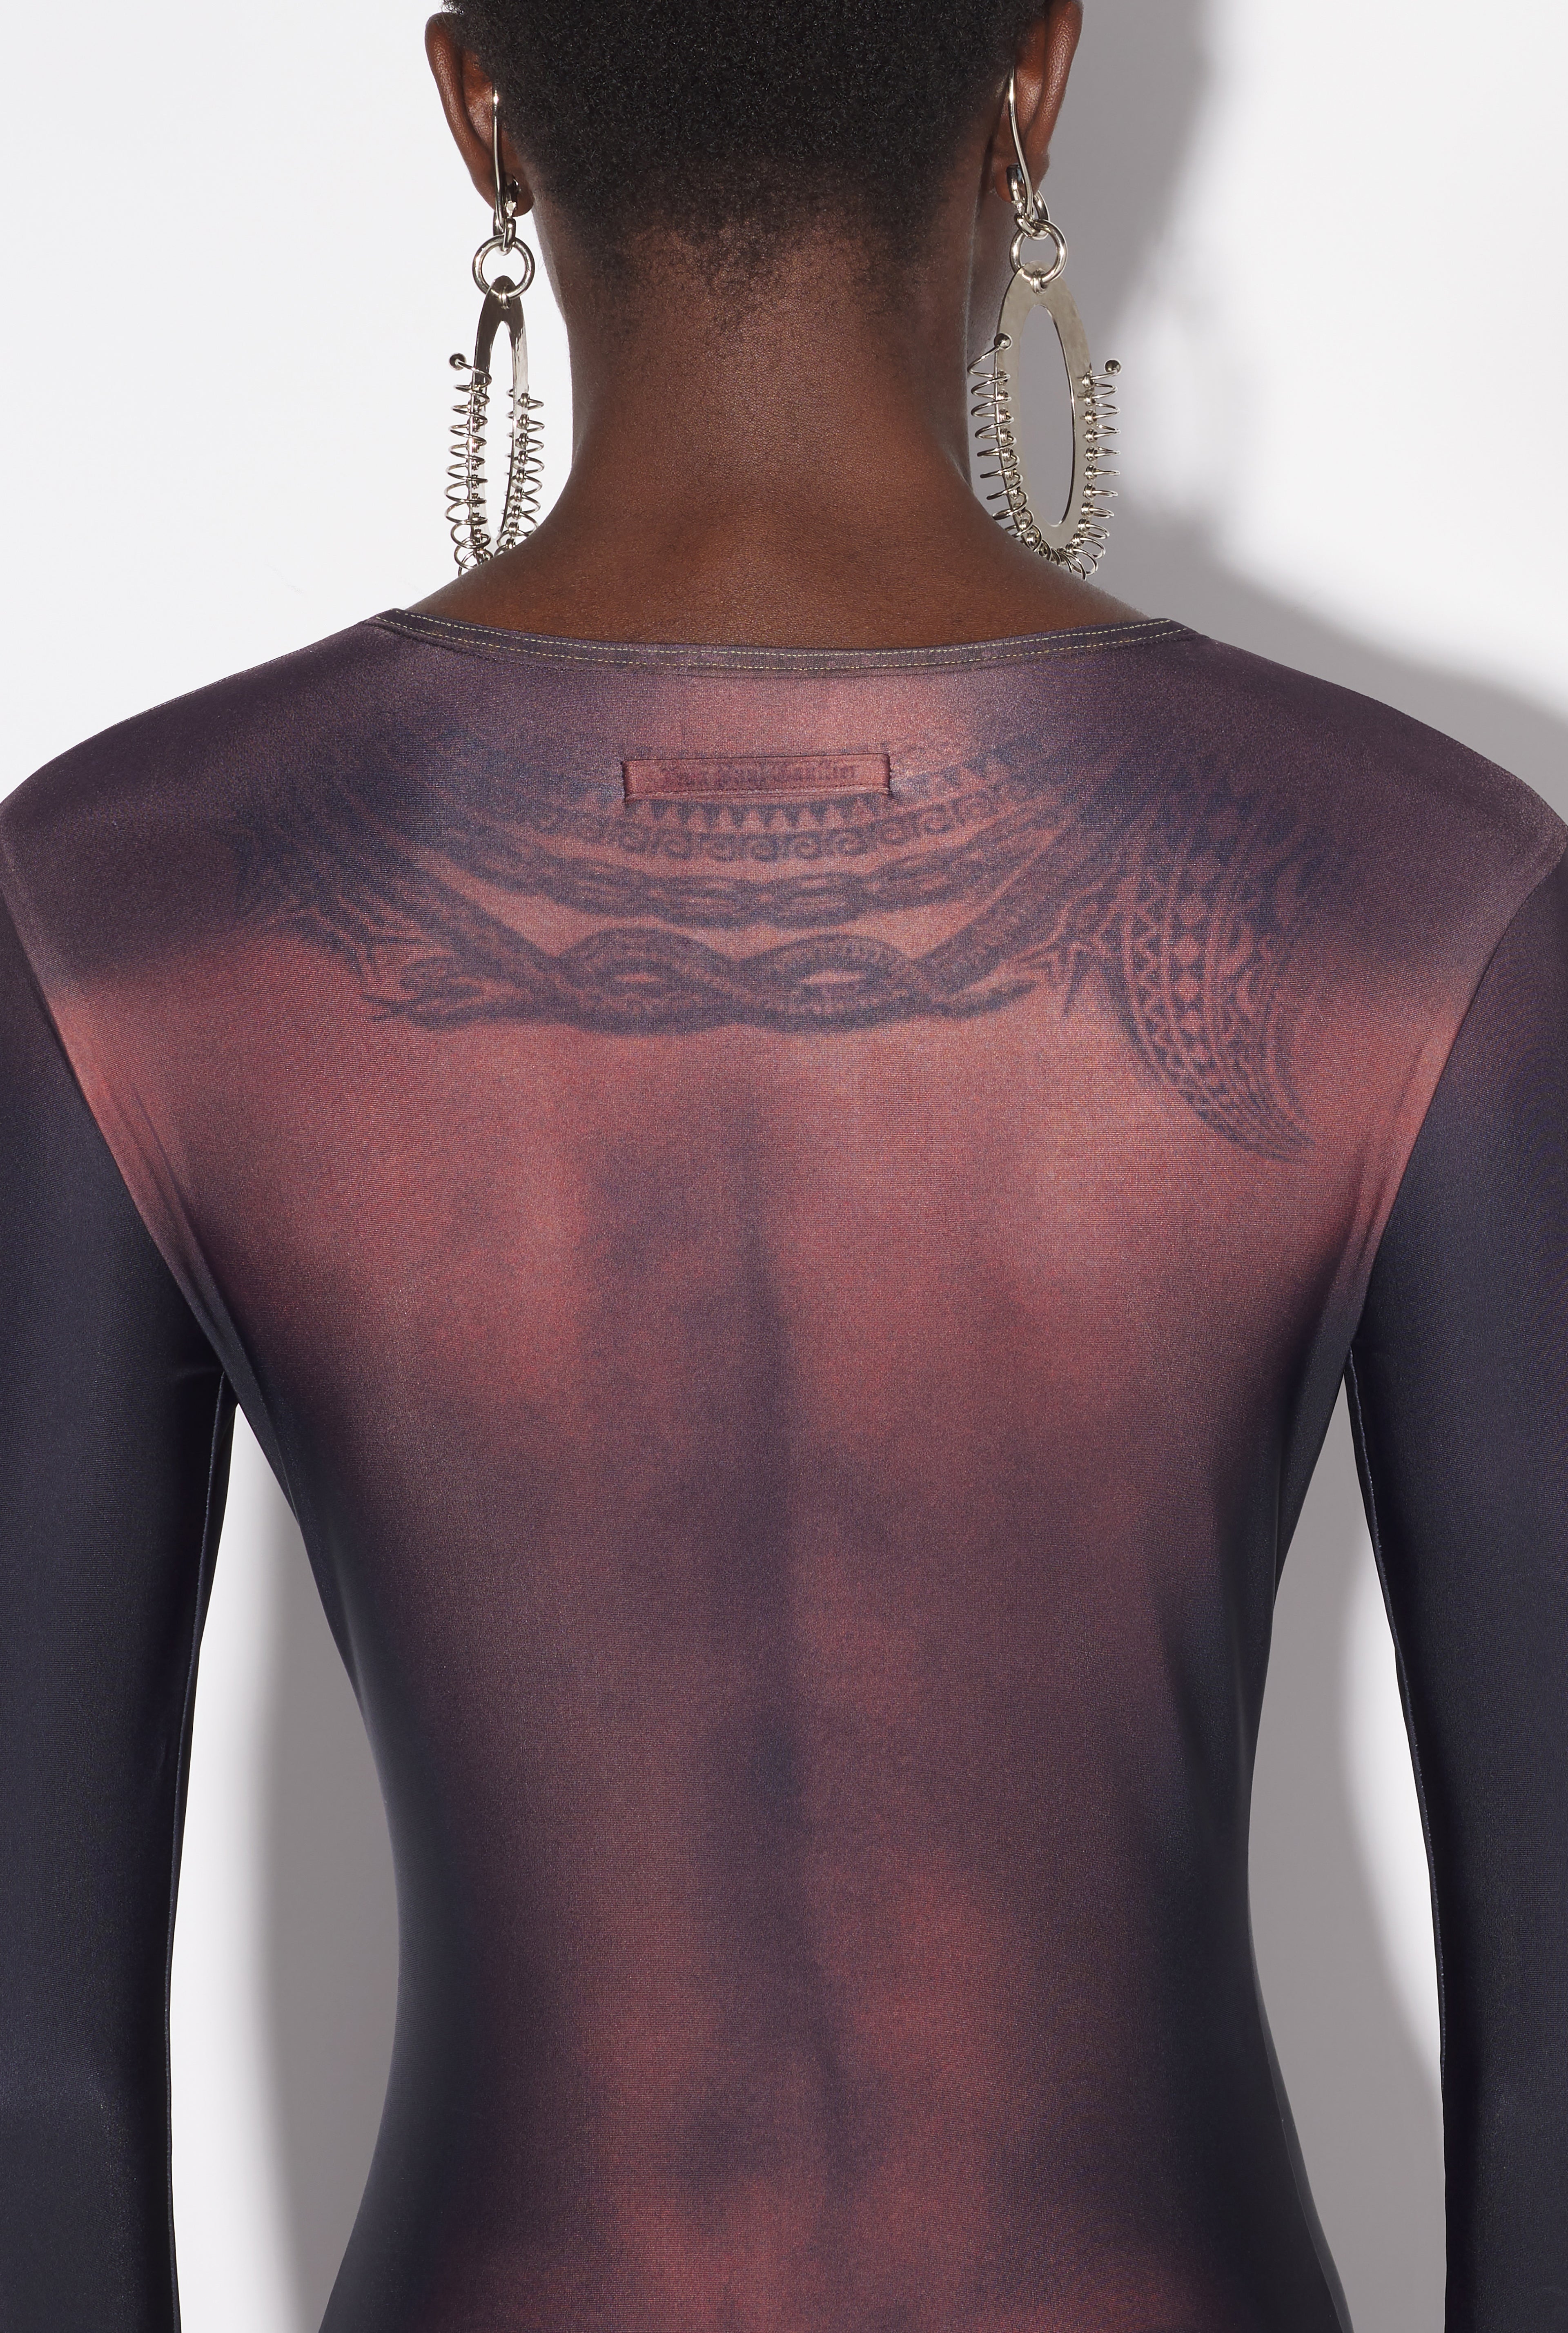 The Long Ebony Body Tattoo Dress